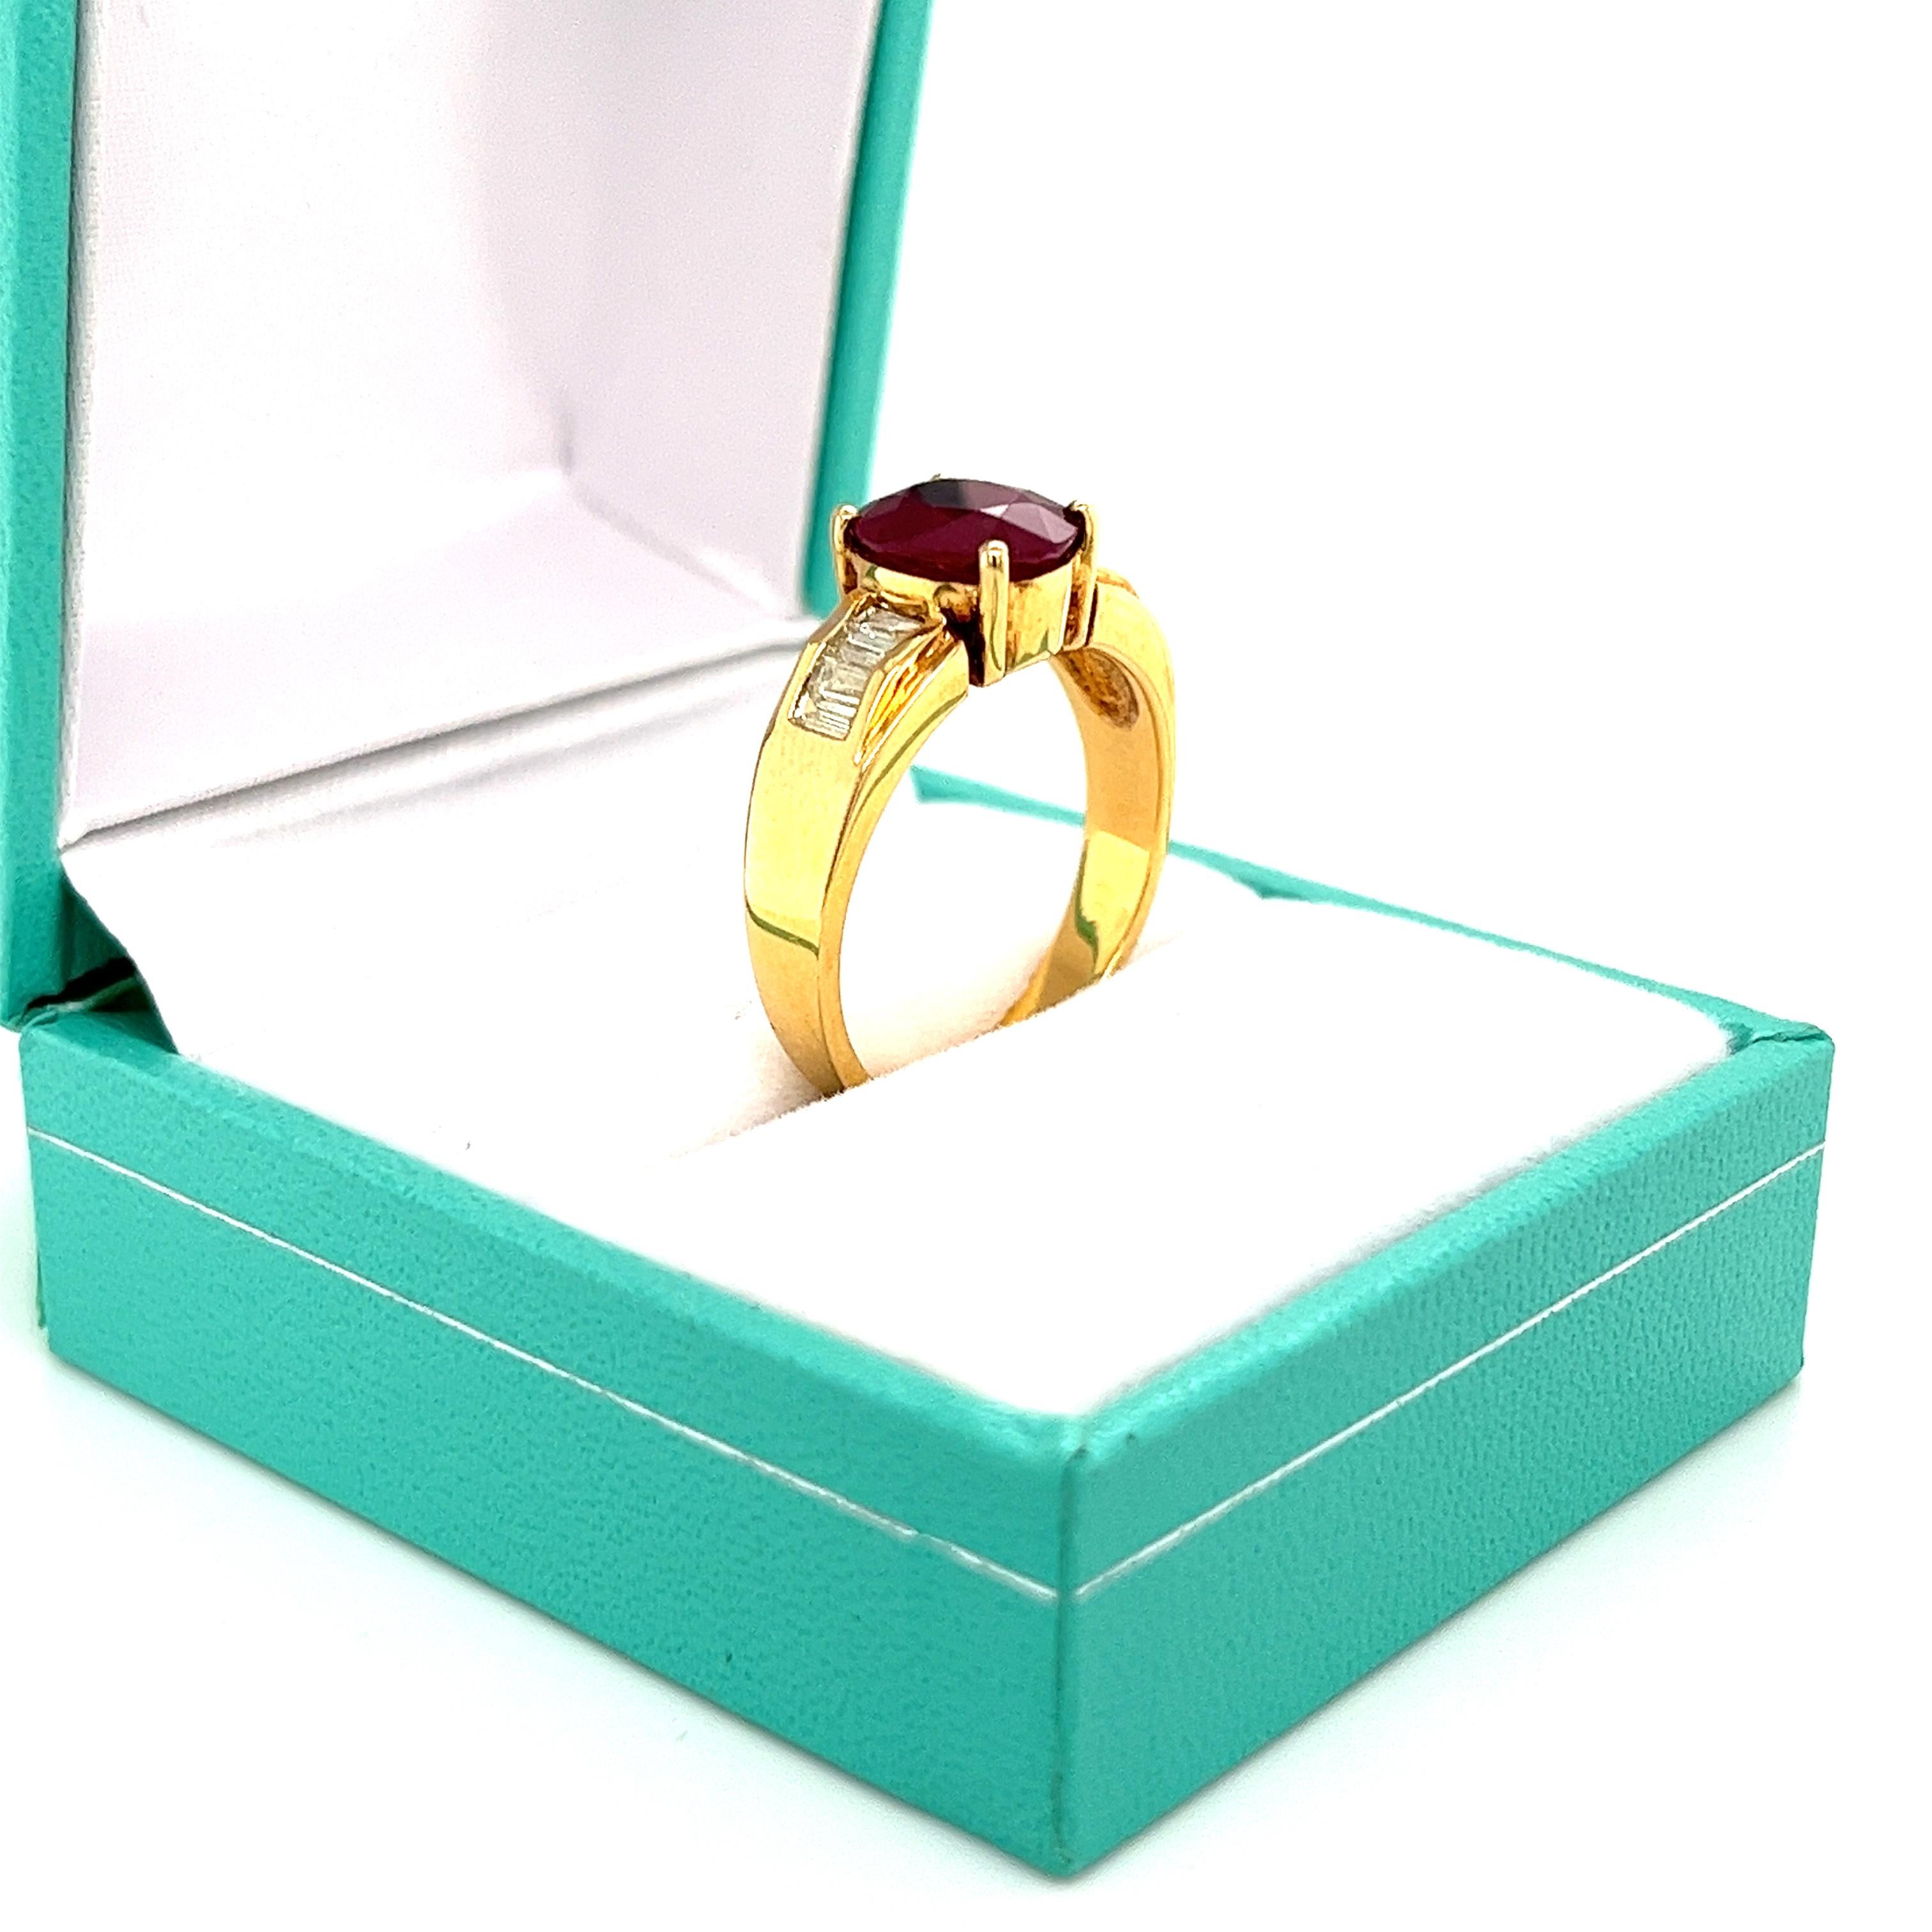 10 carat ruby ring